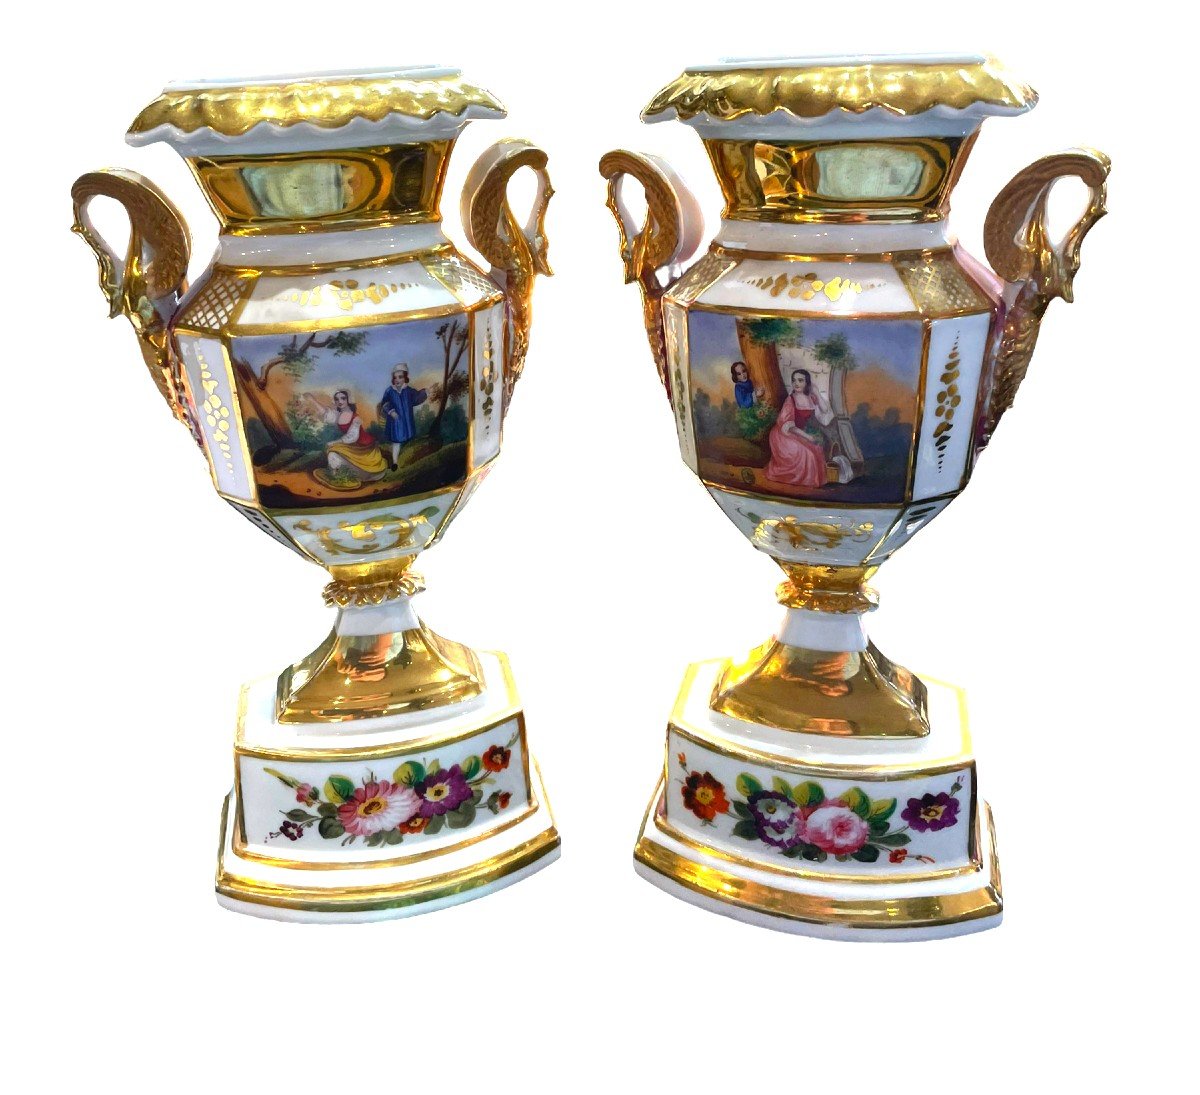 Paire De Vases En Porcelaine De Paris Scènes Galantes